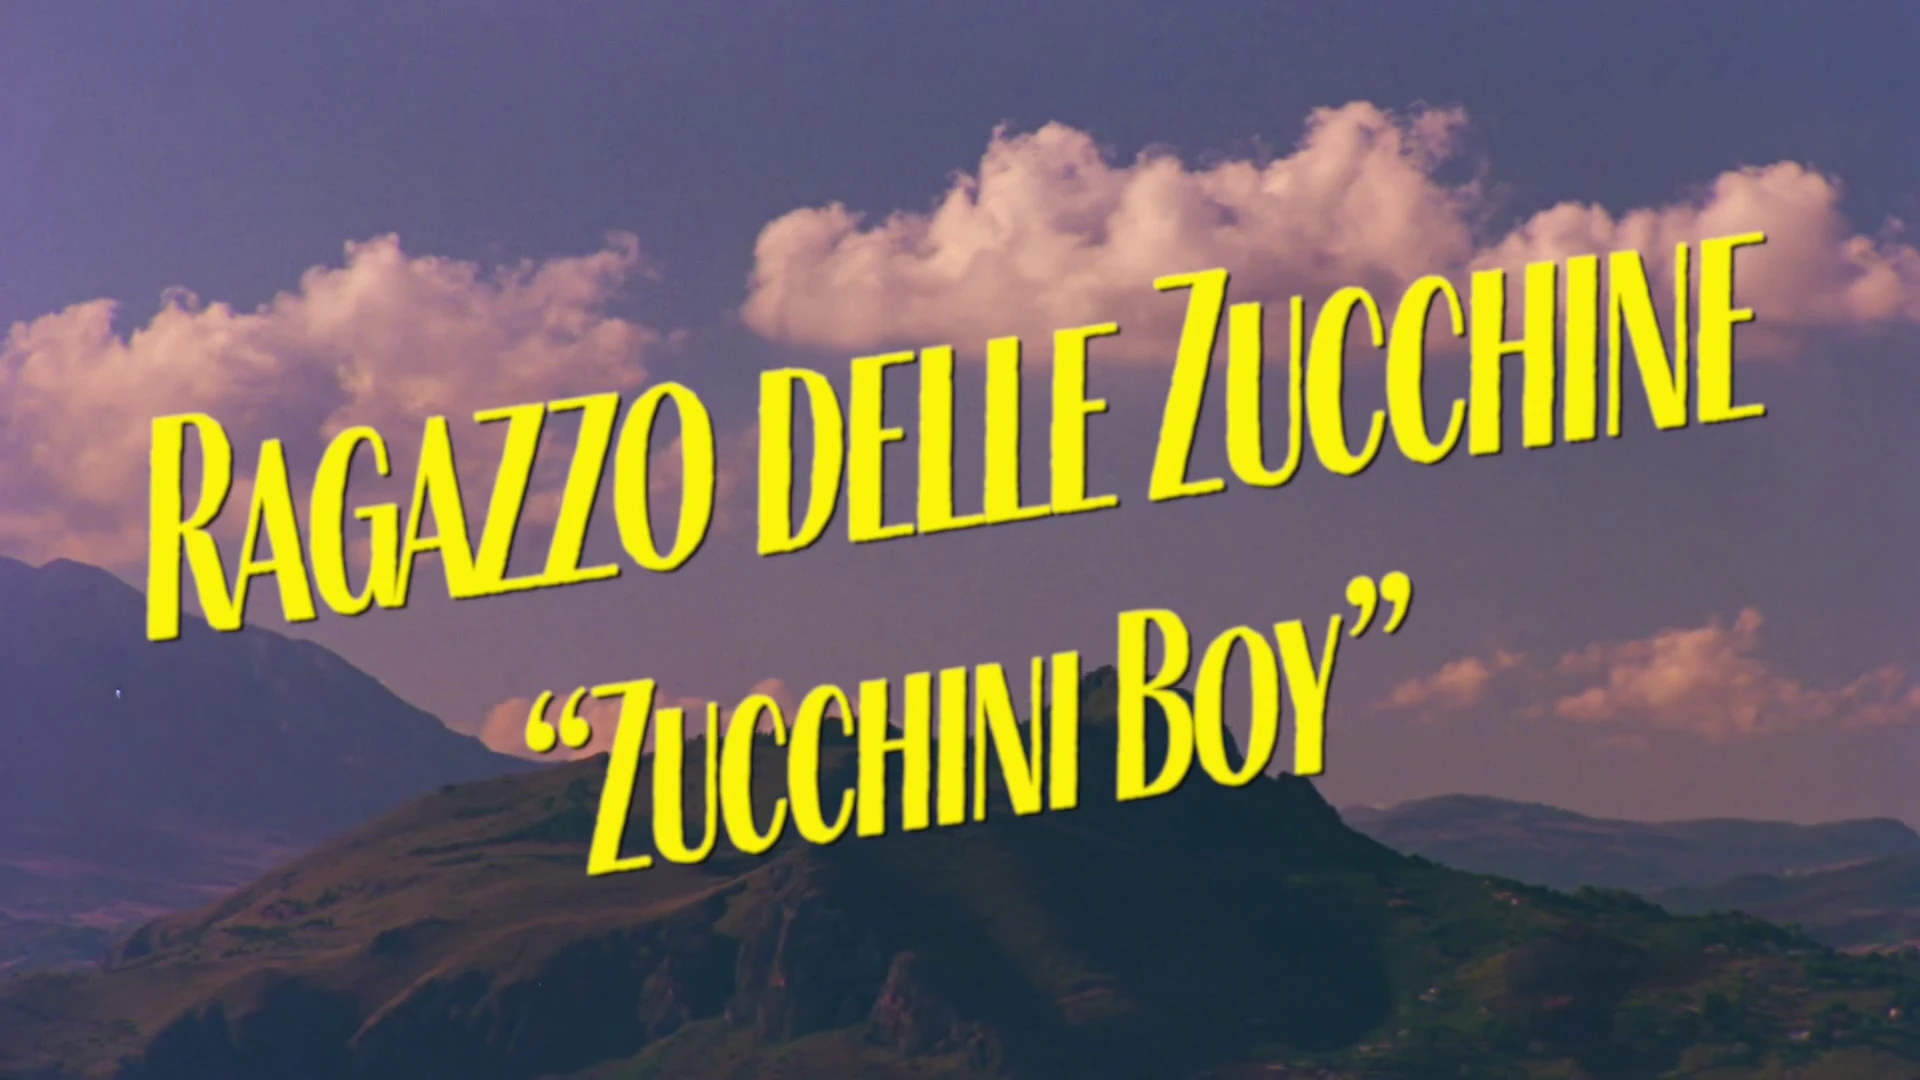 Zucchini Boy – A Film By Brett Lloyd